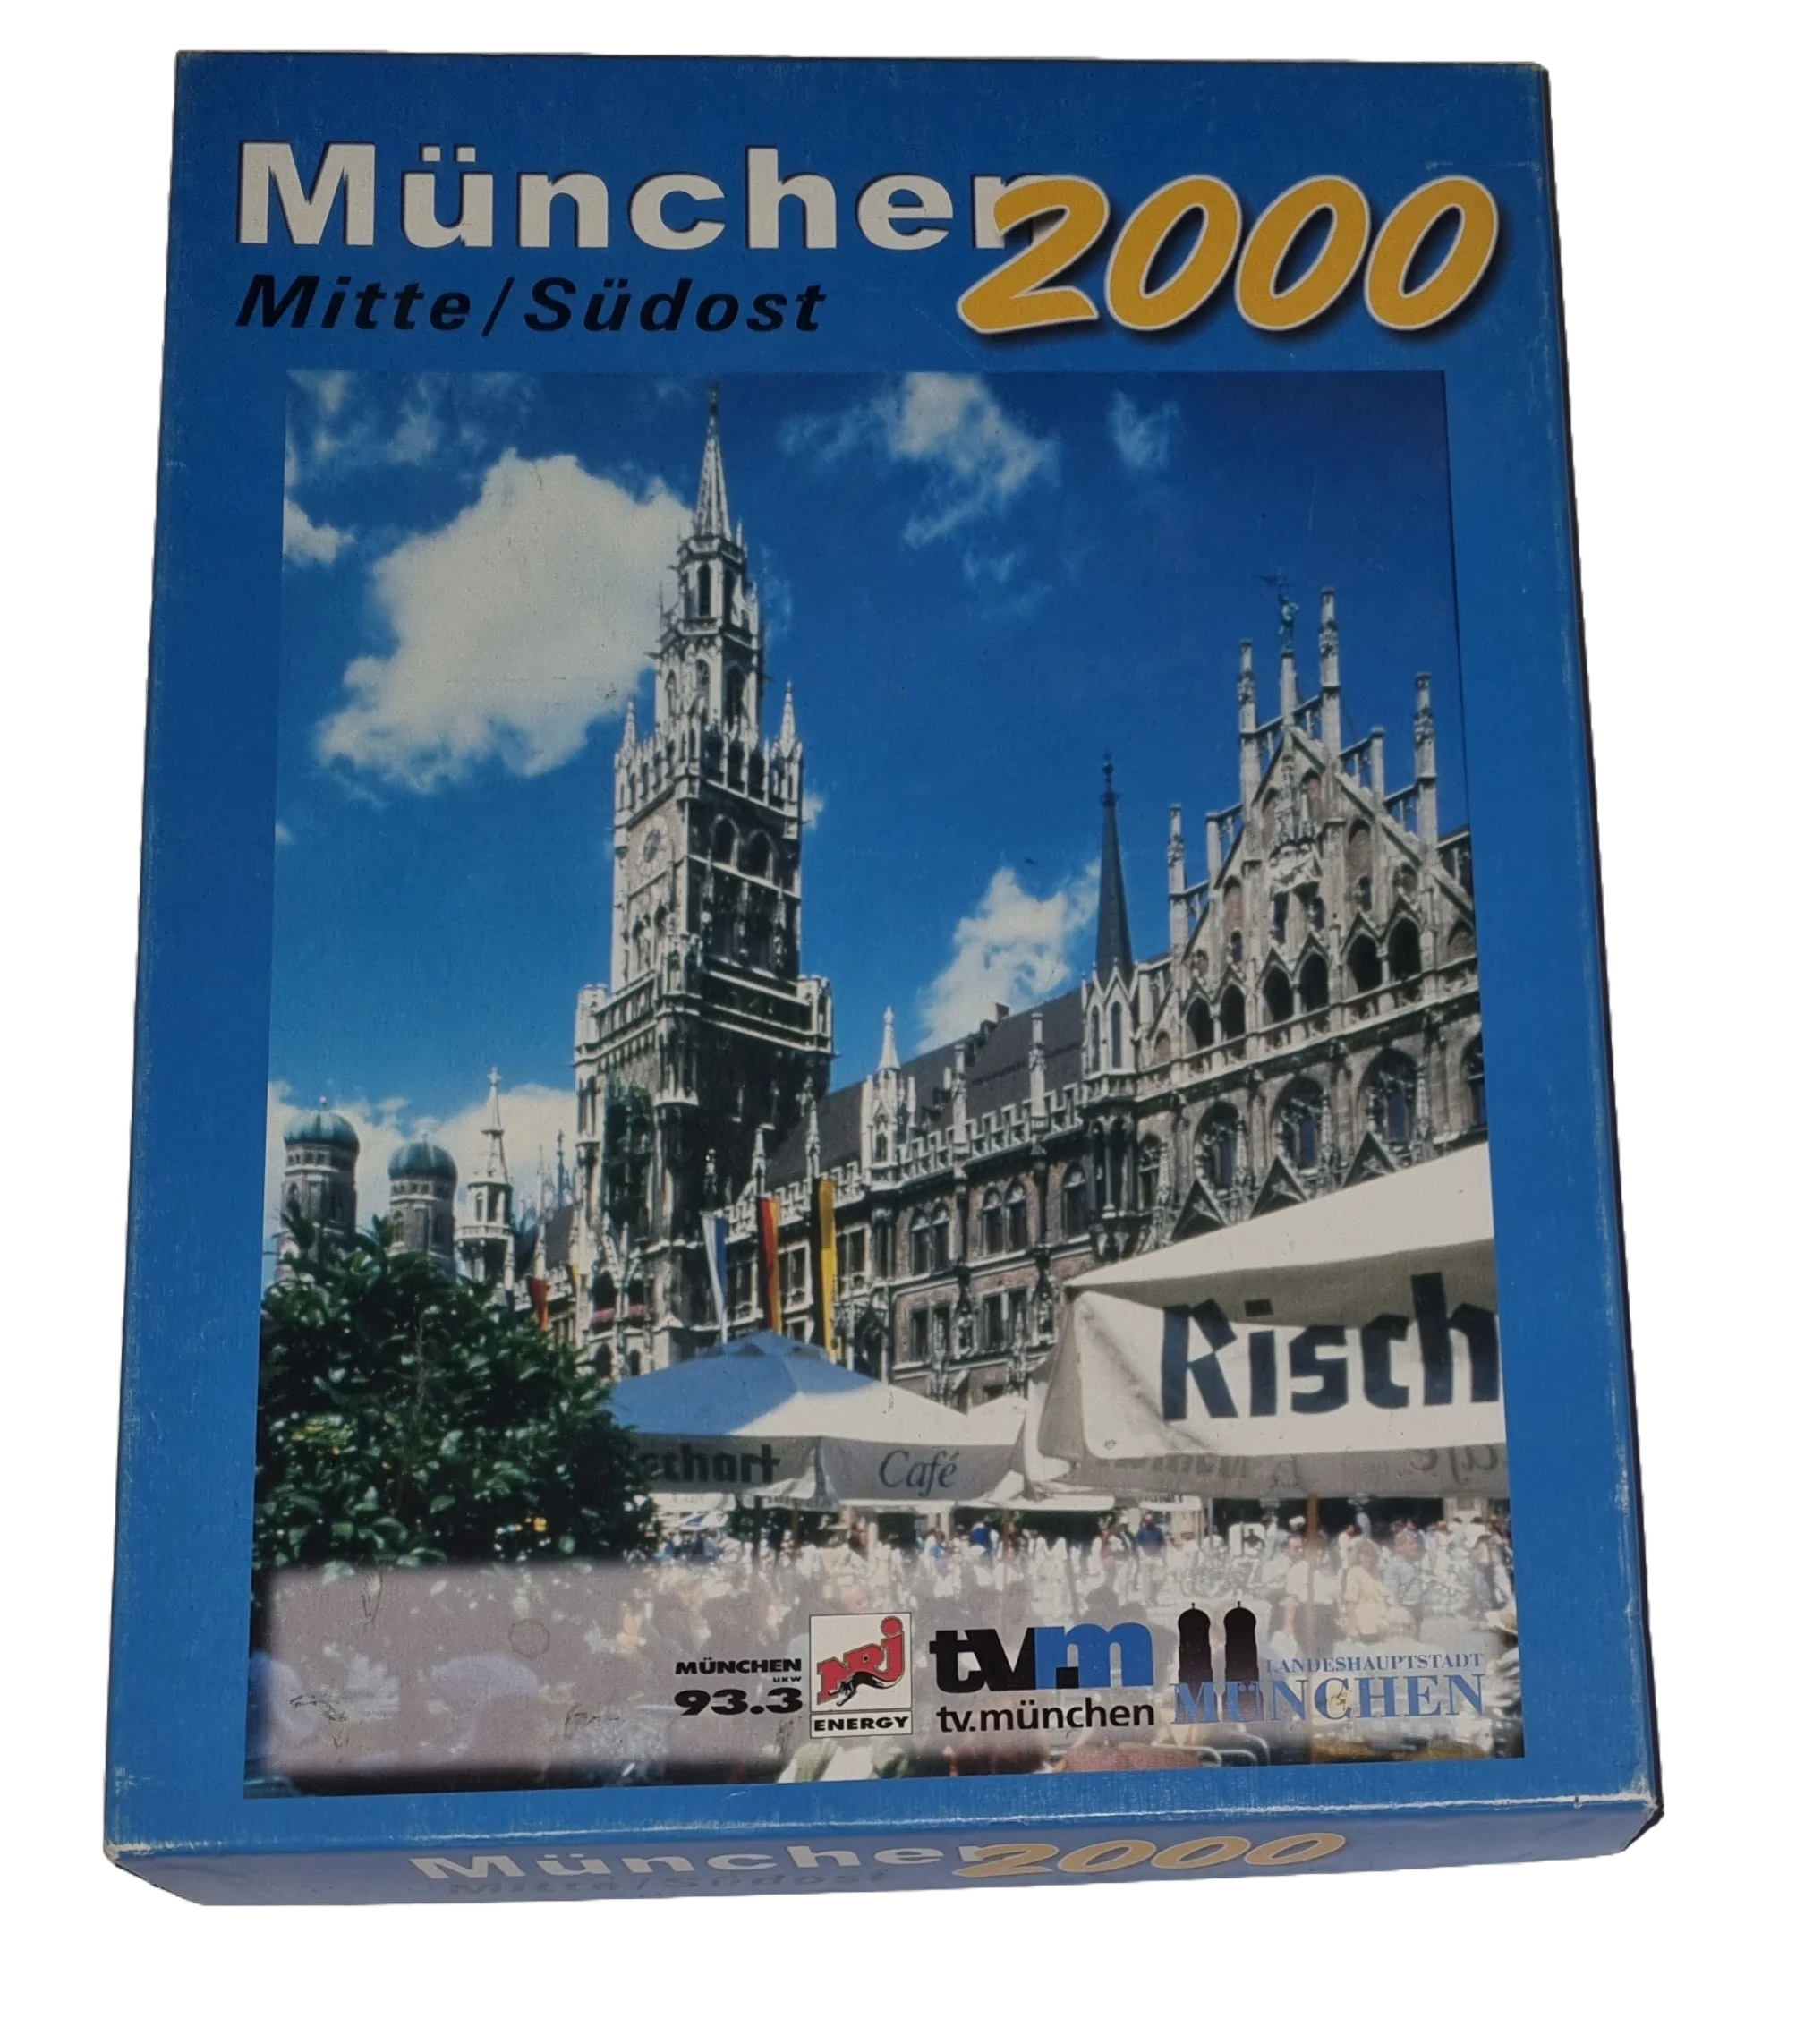 Die Spiele Agentur München 2000 Mitte/Südost